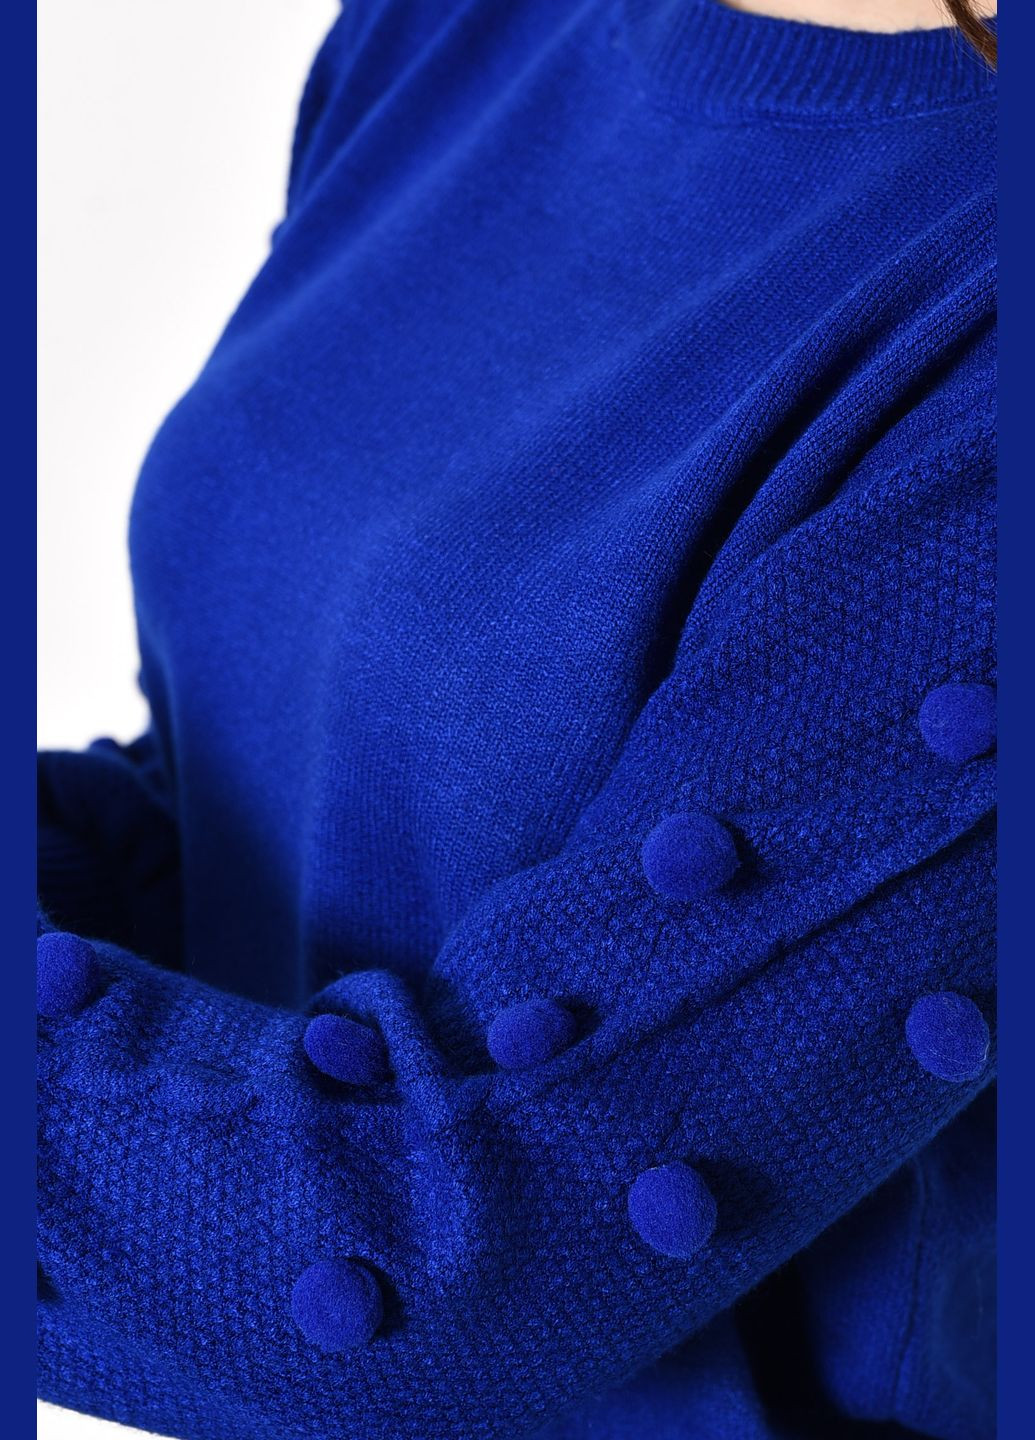 Синий зимний свитер женский синего цвета пуловер Let's Shop